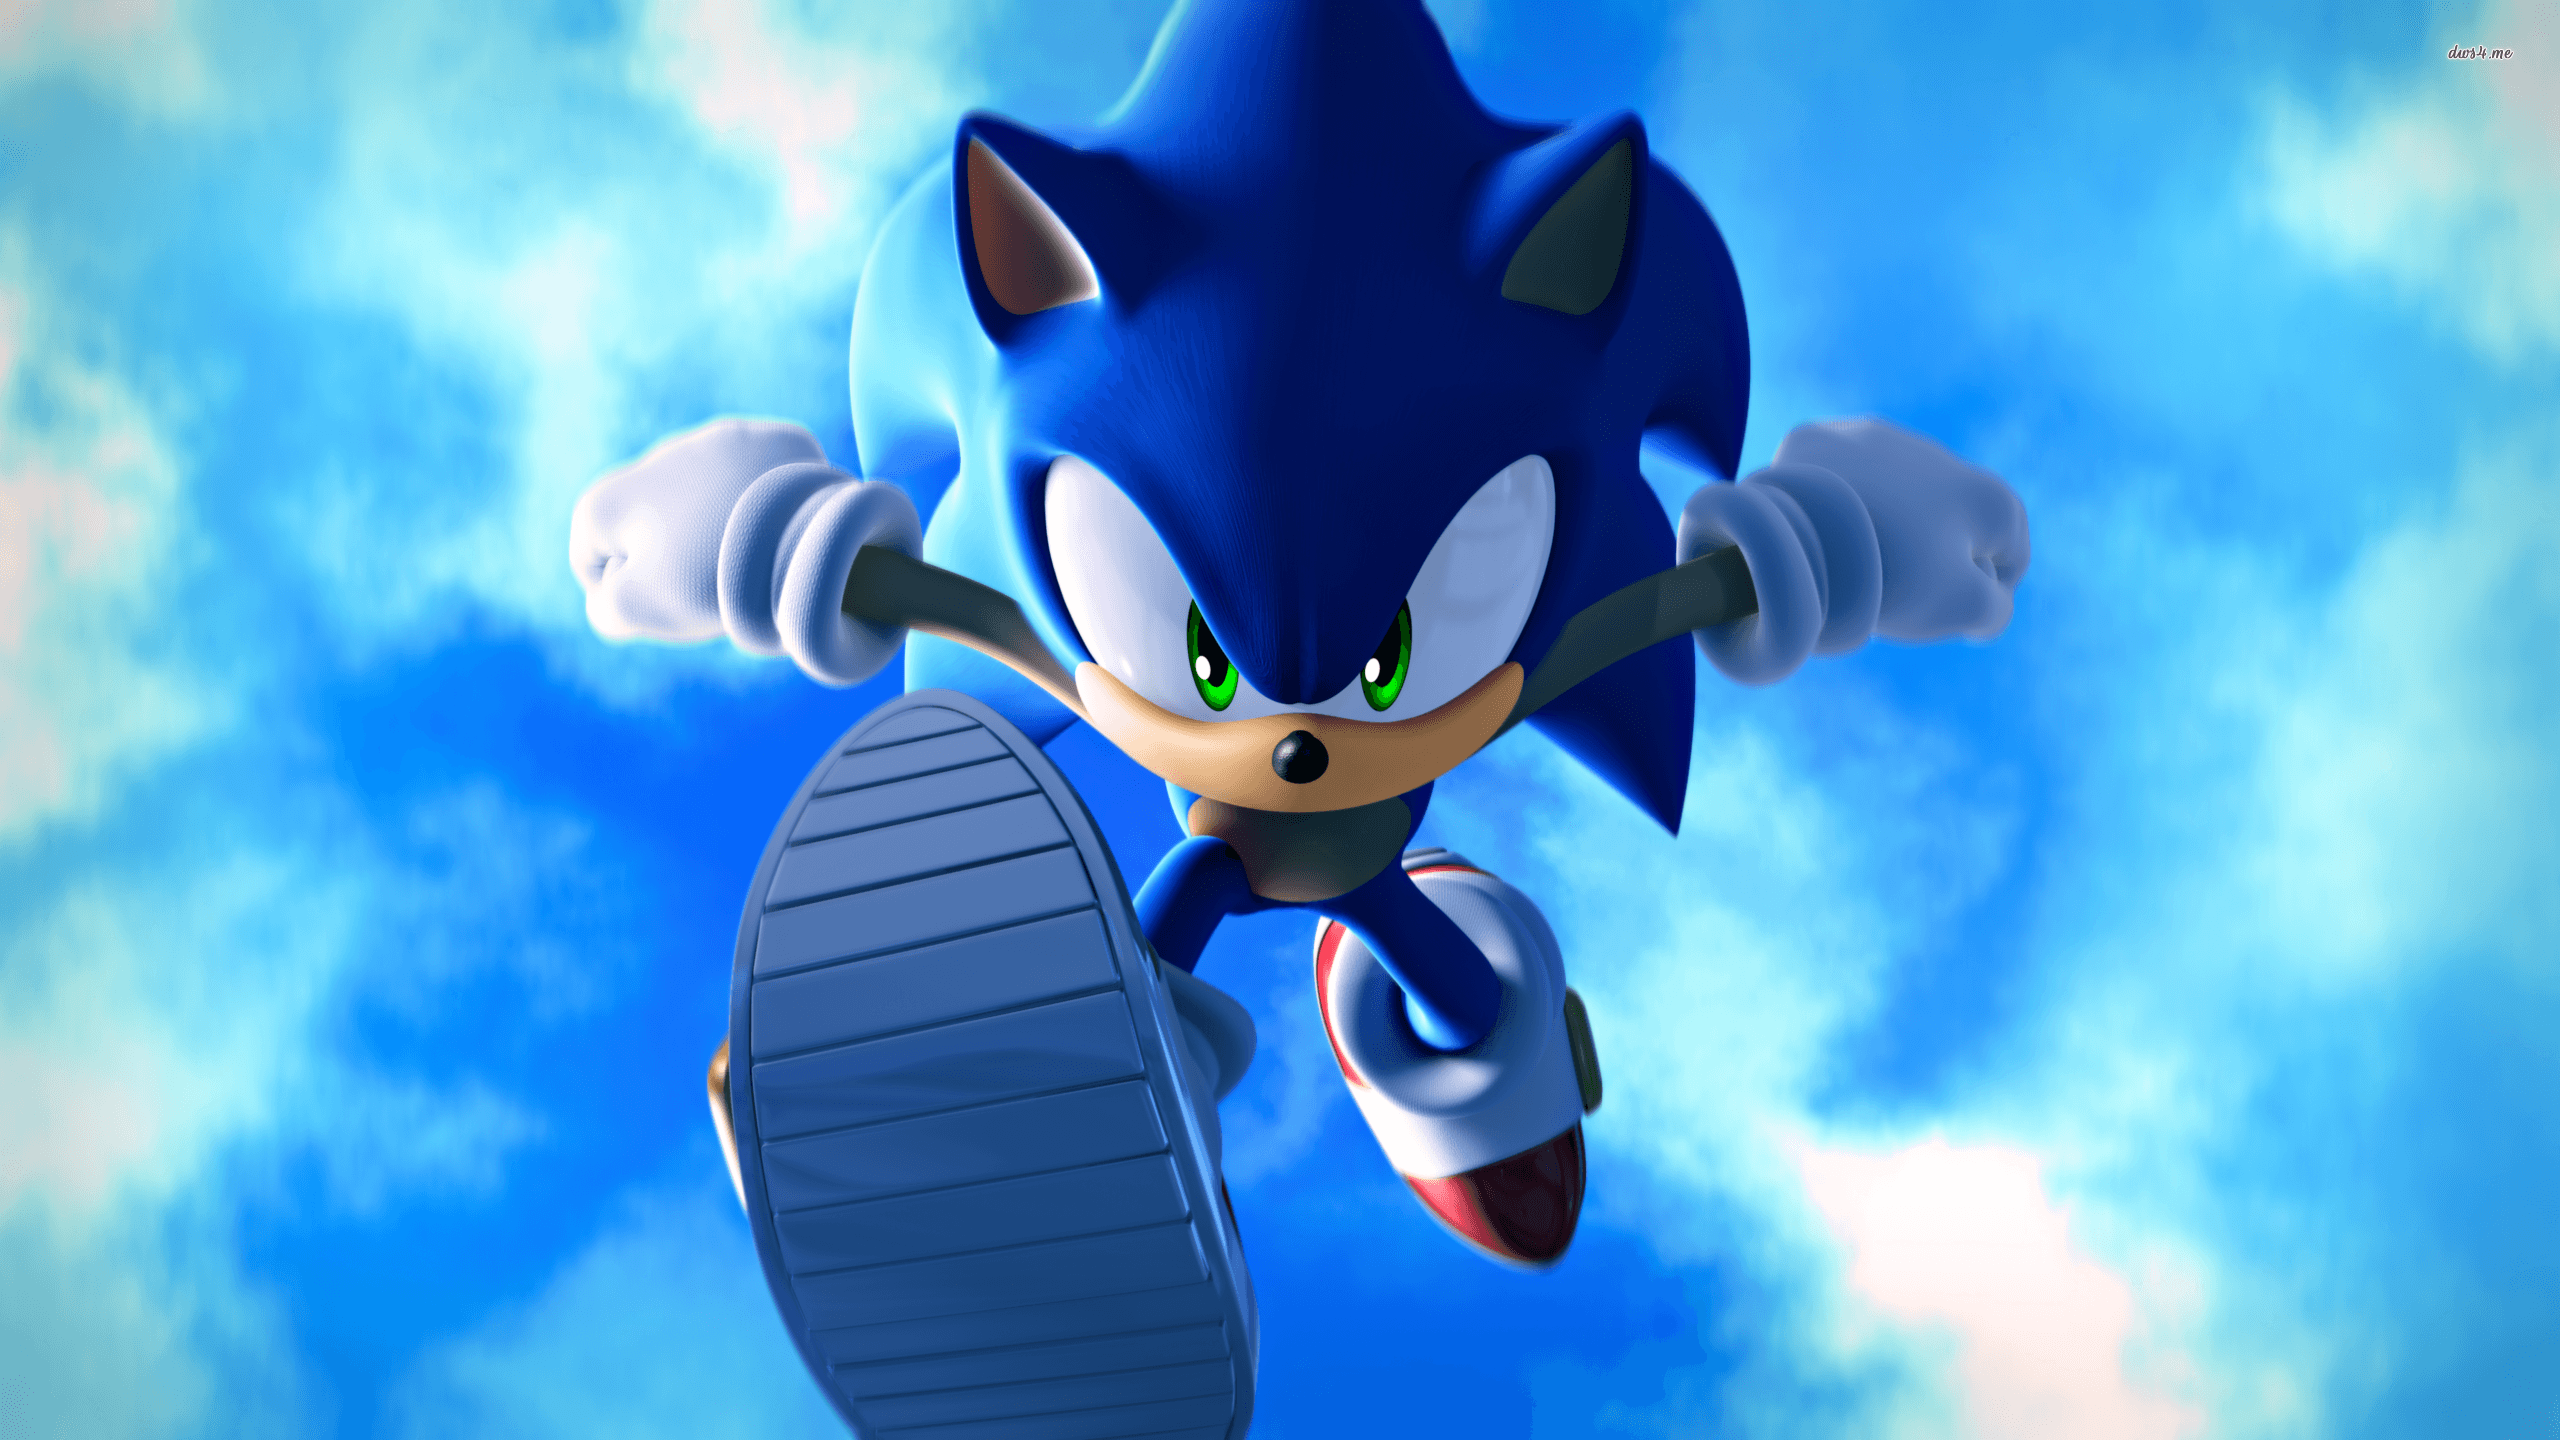 Fondos de Sonic - Mejores fondos de Sonic gratis - WallpaperAccess